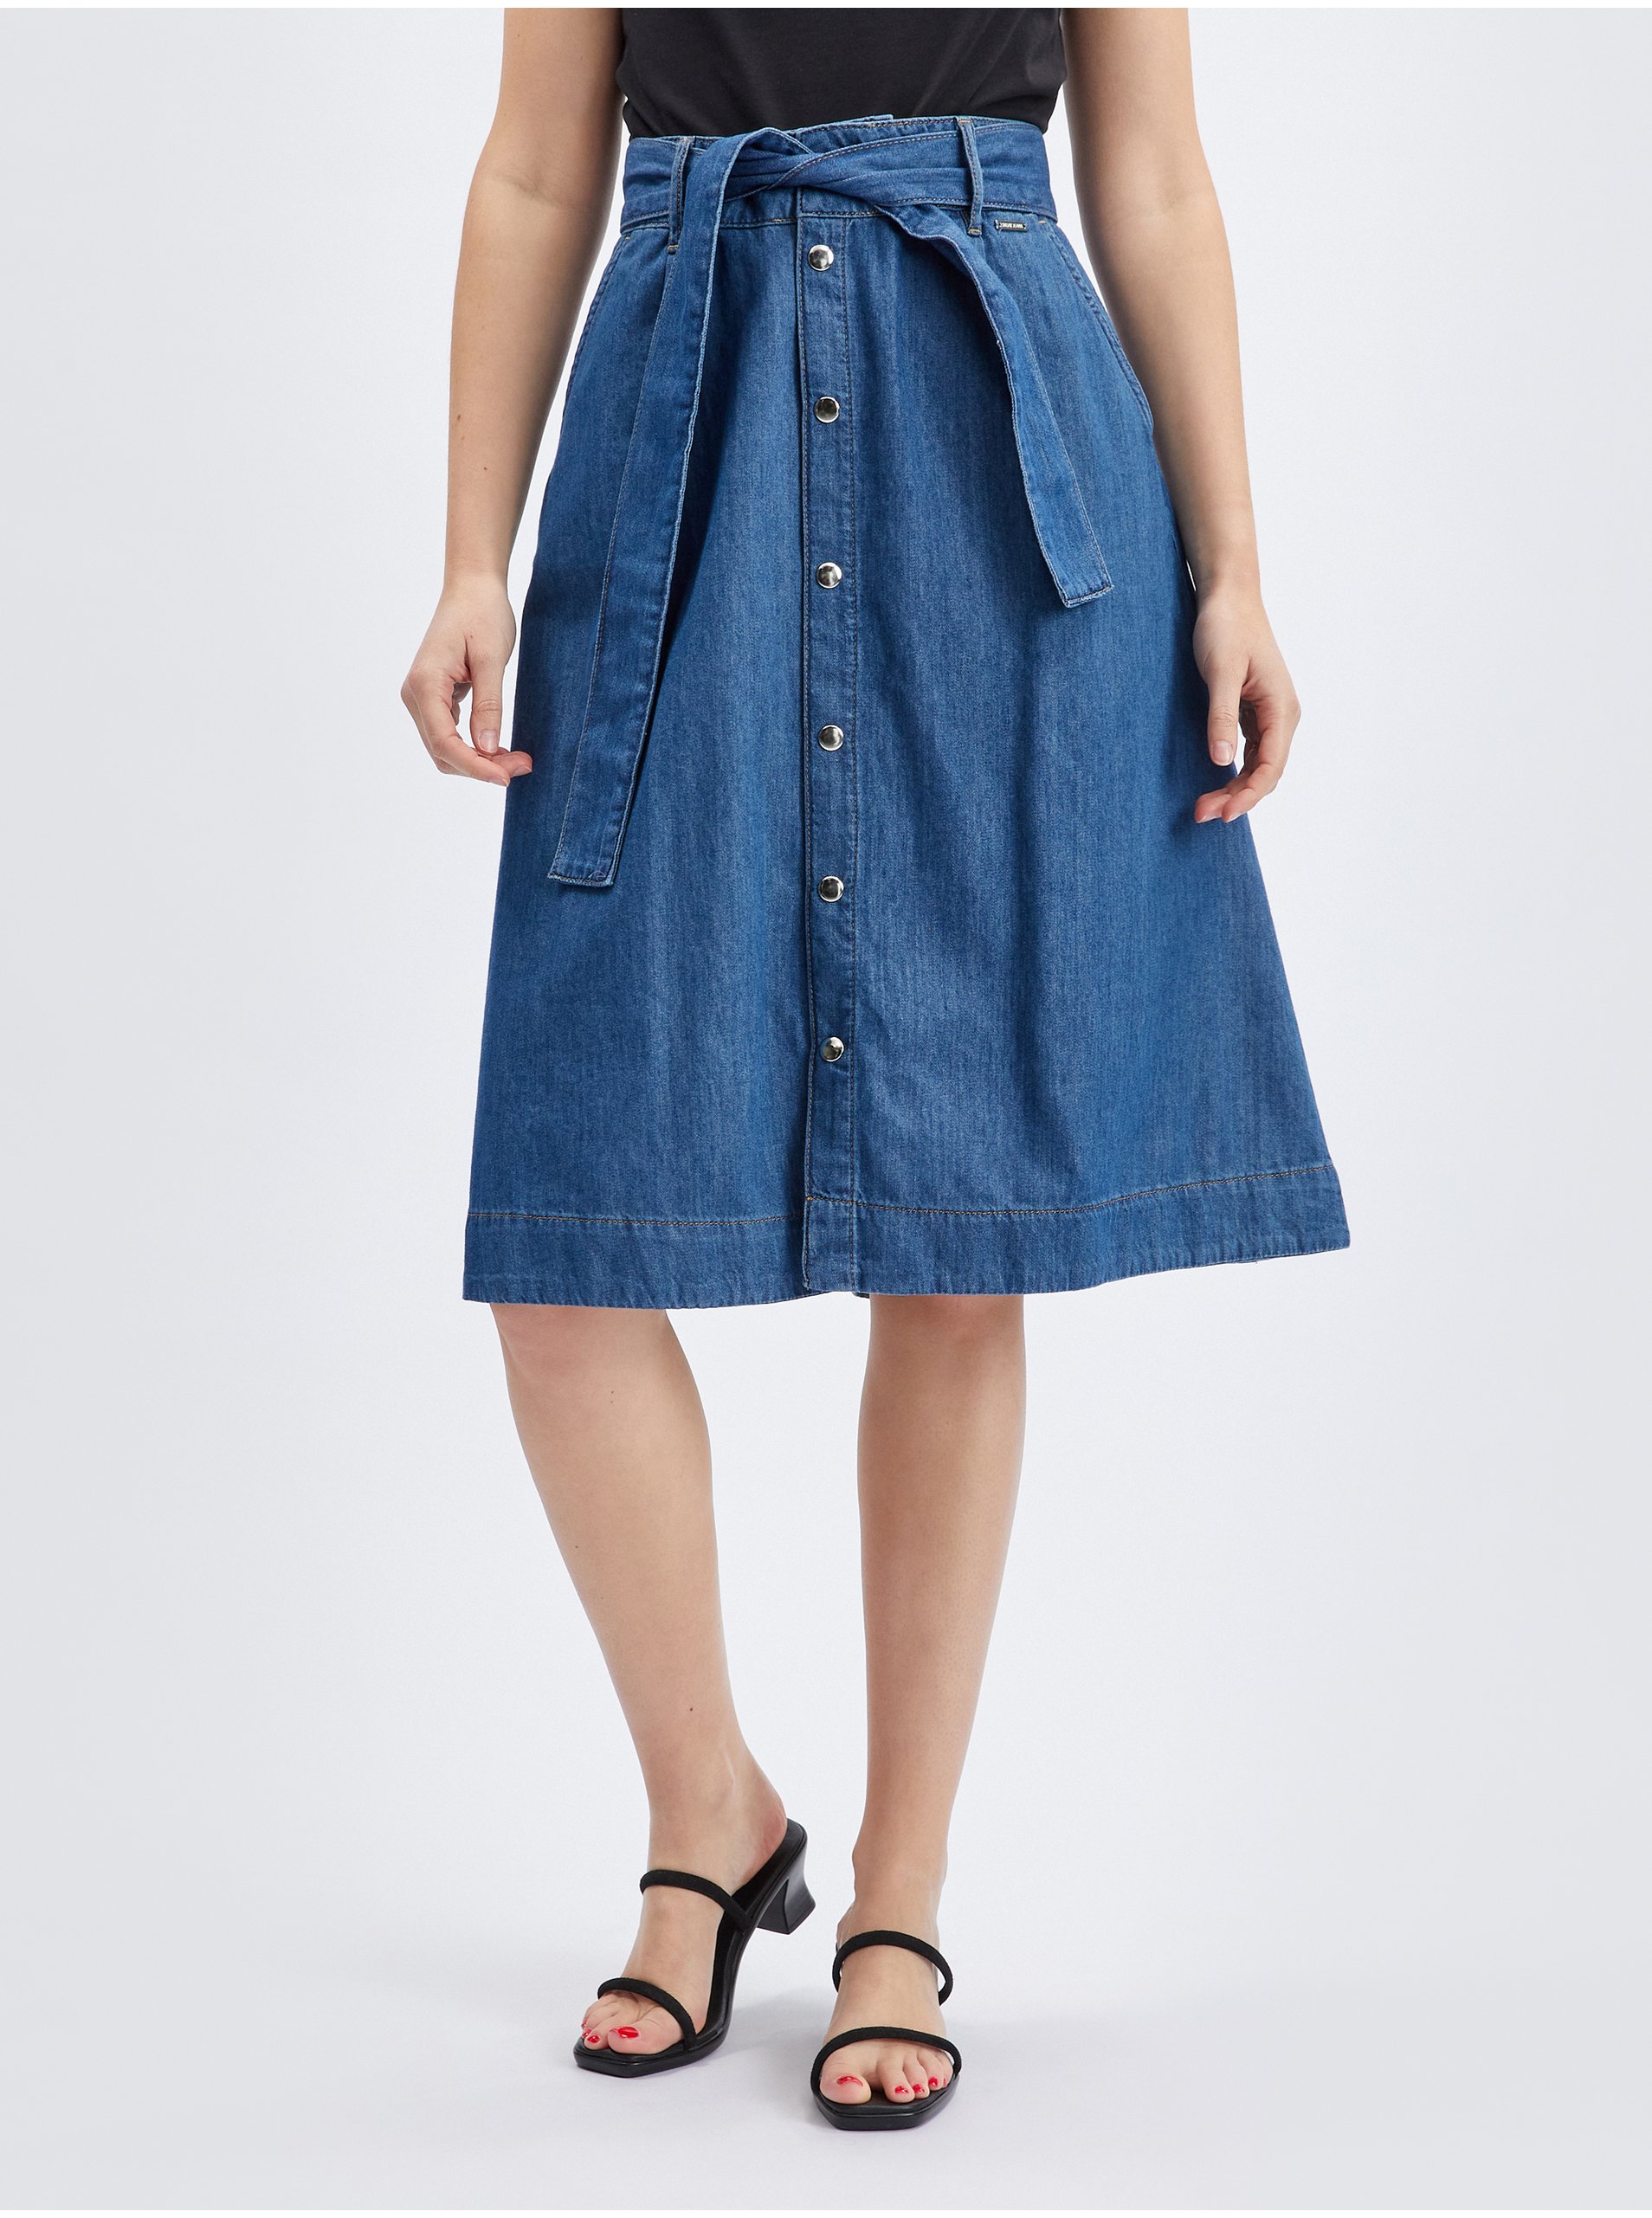 Orsay Blue Denim Skirt with Belt - Women